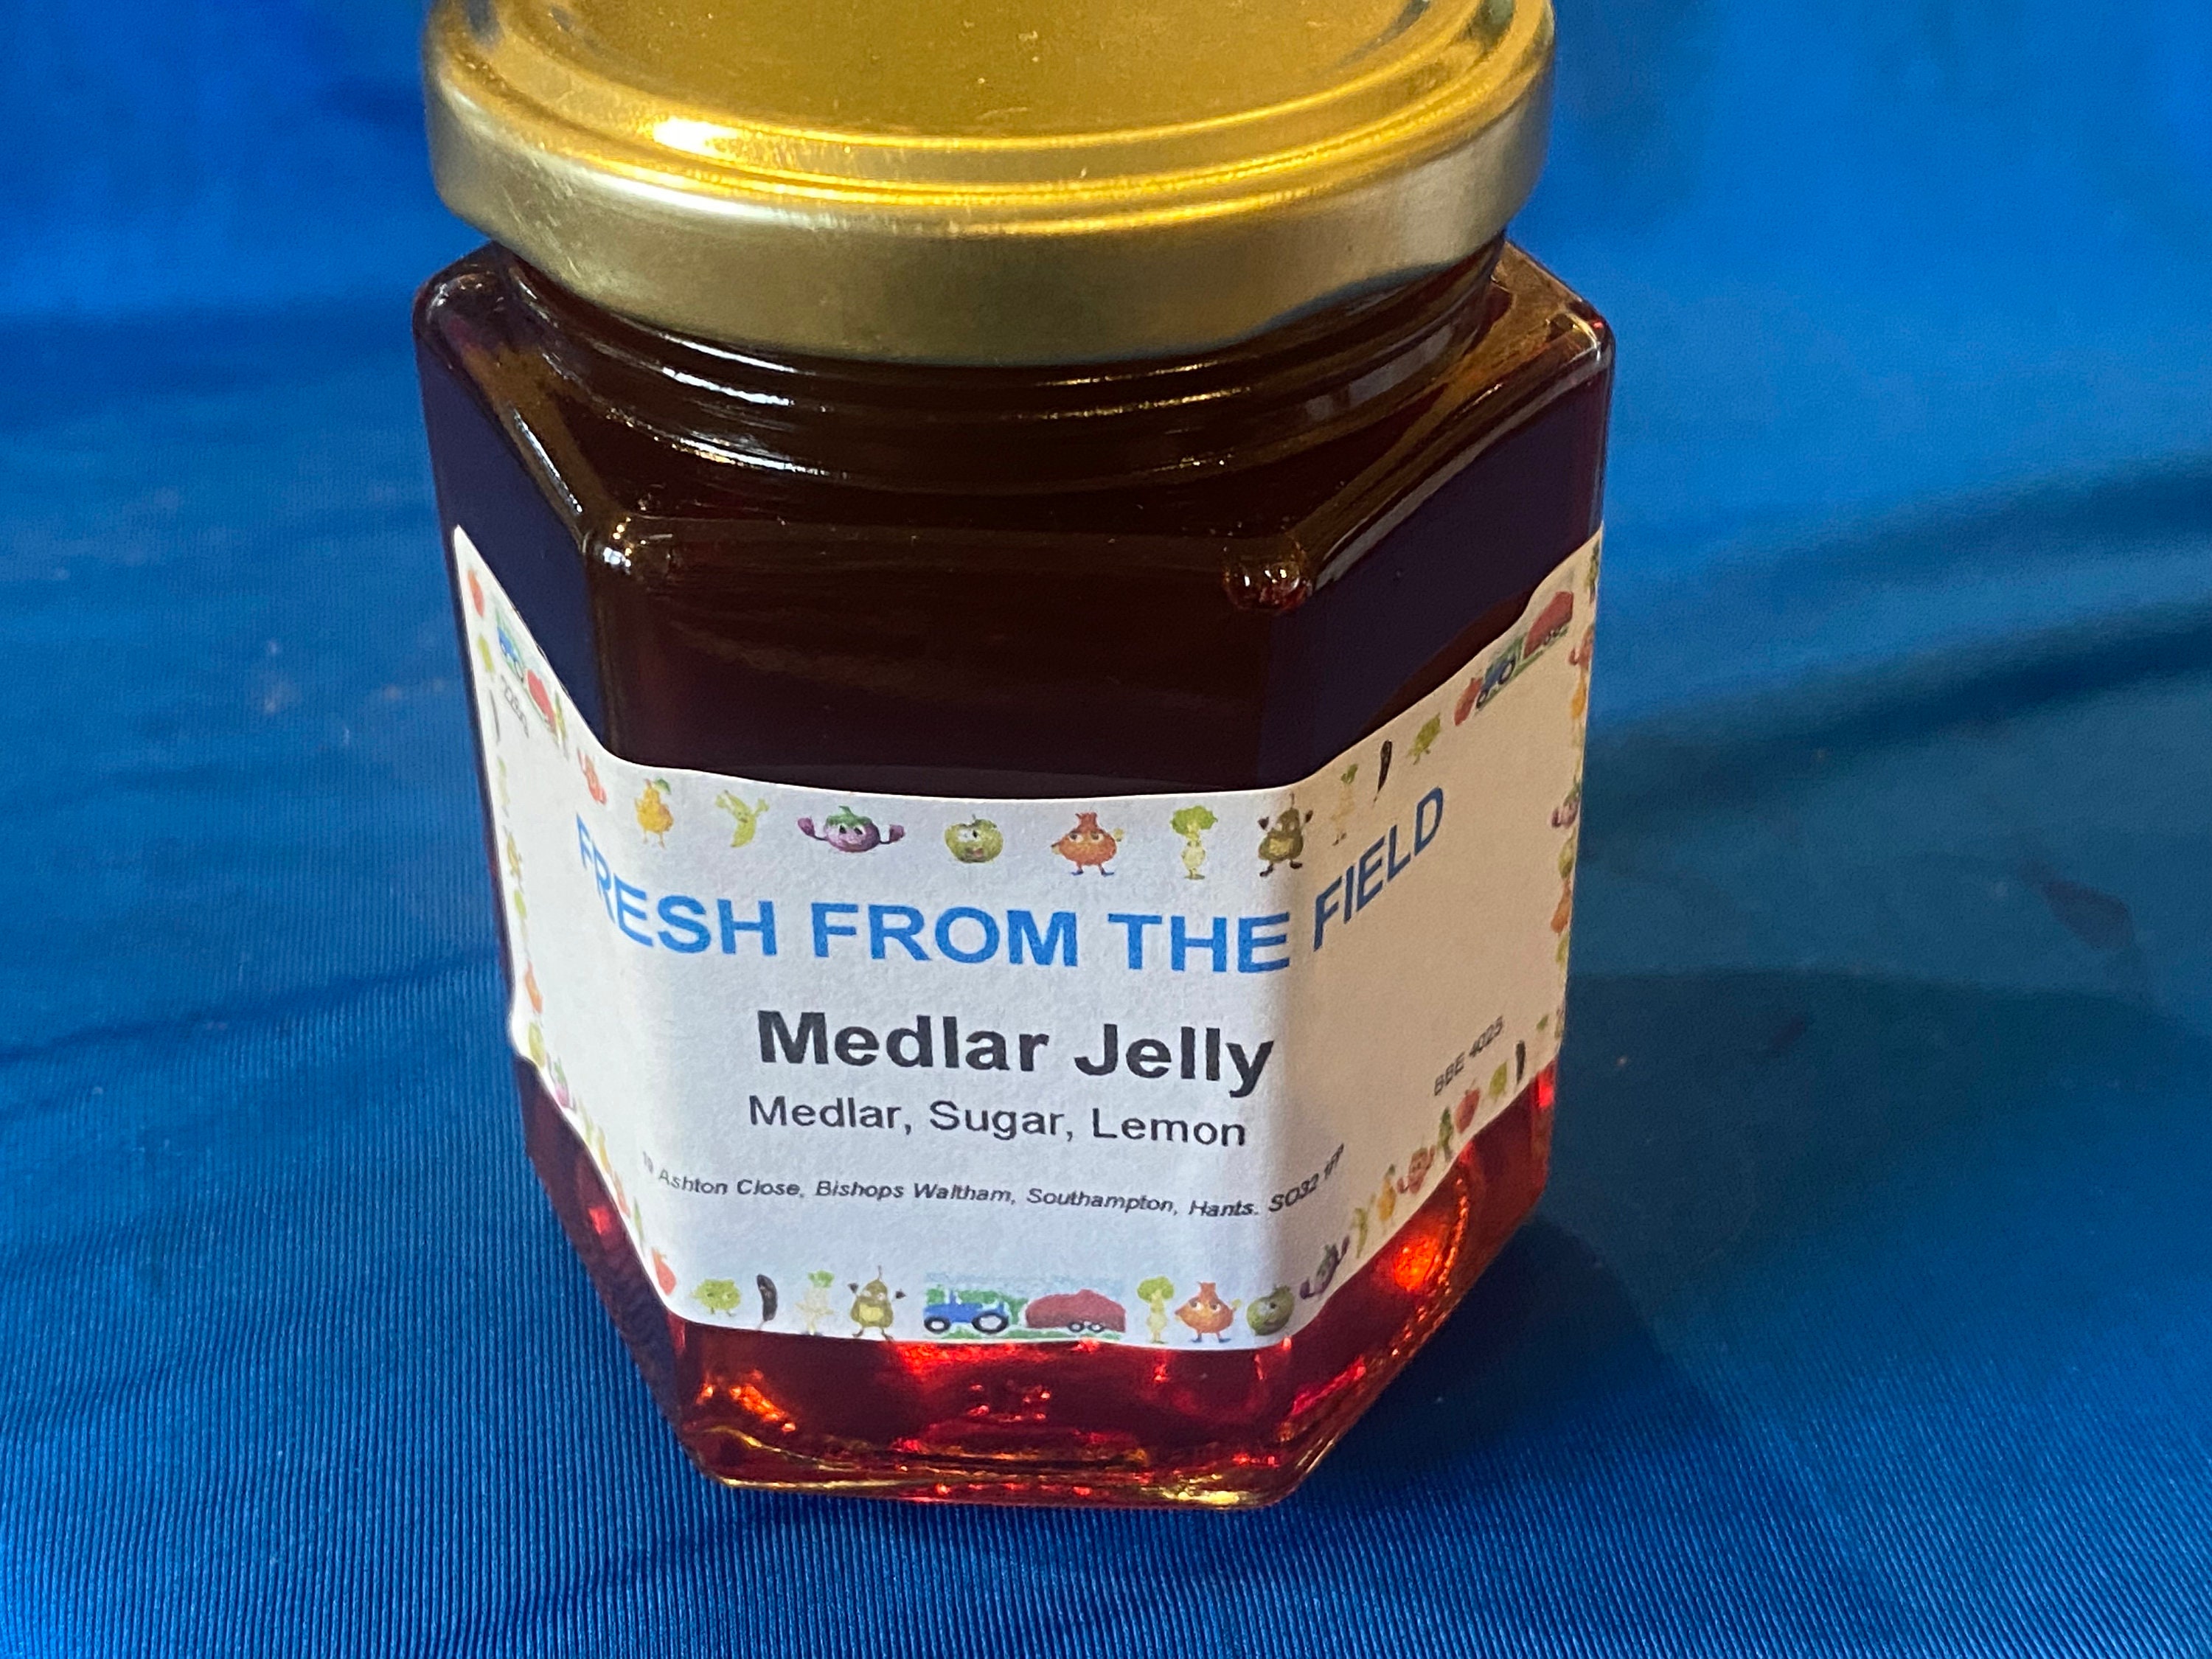 Medlar jelly